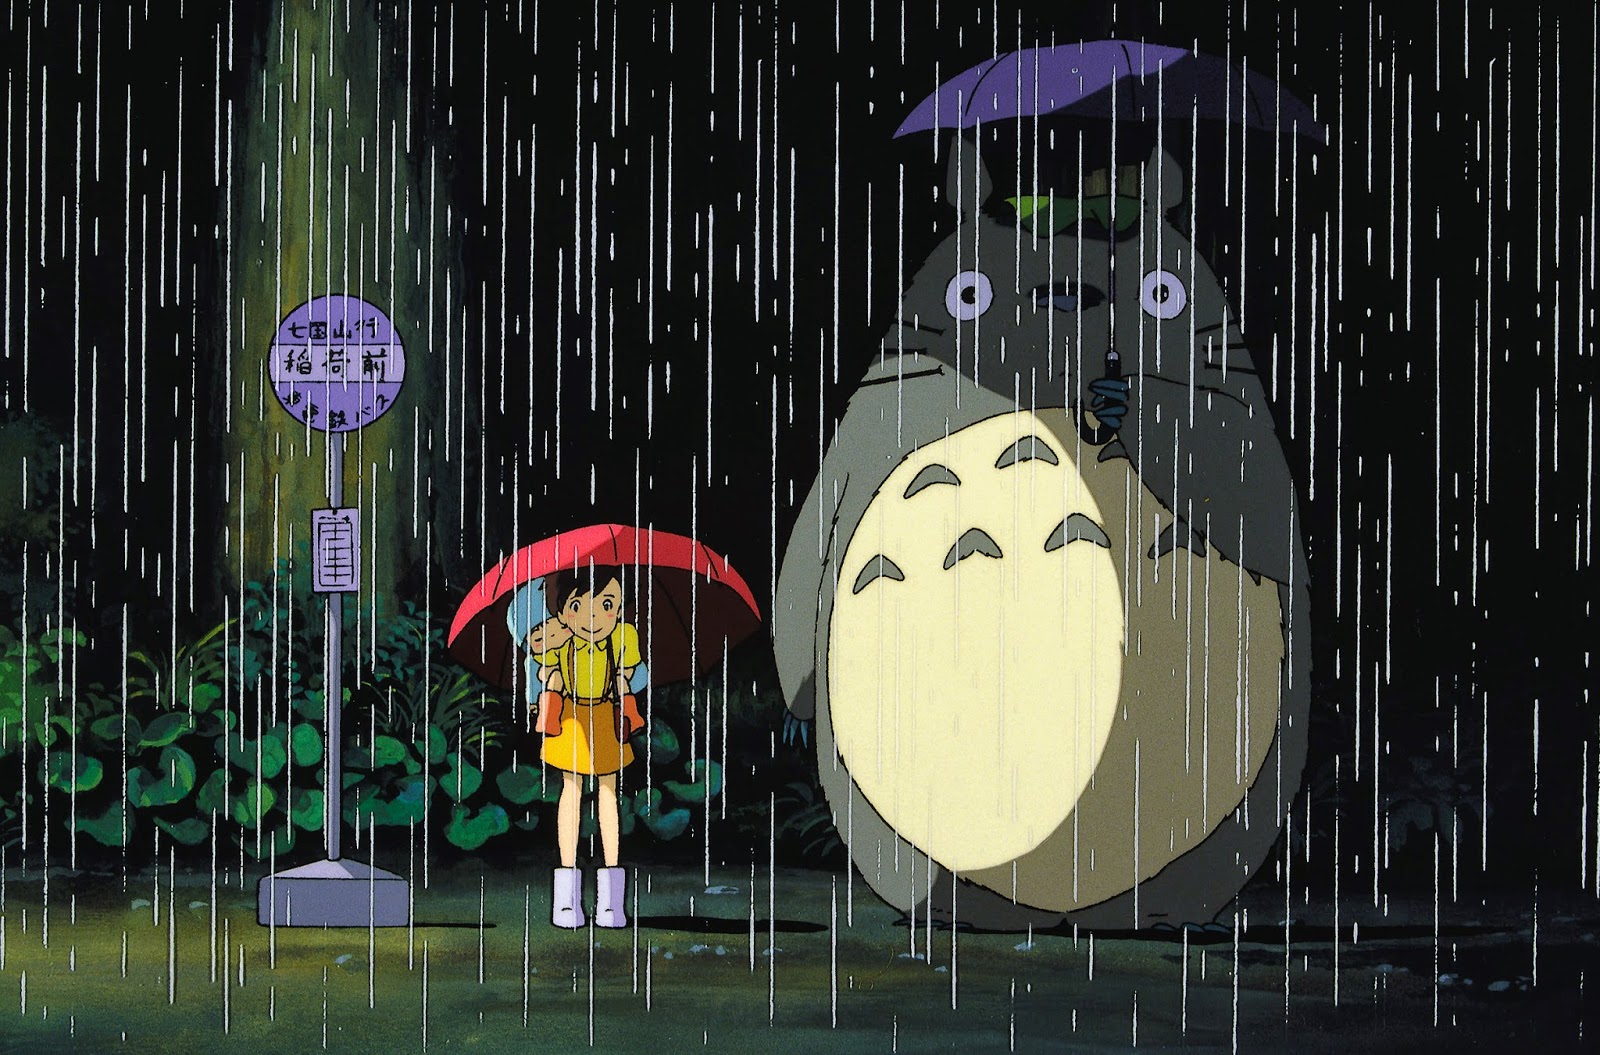 The Wind Rises: Perhentian Terakhir Hayao Miyazaki?